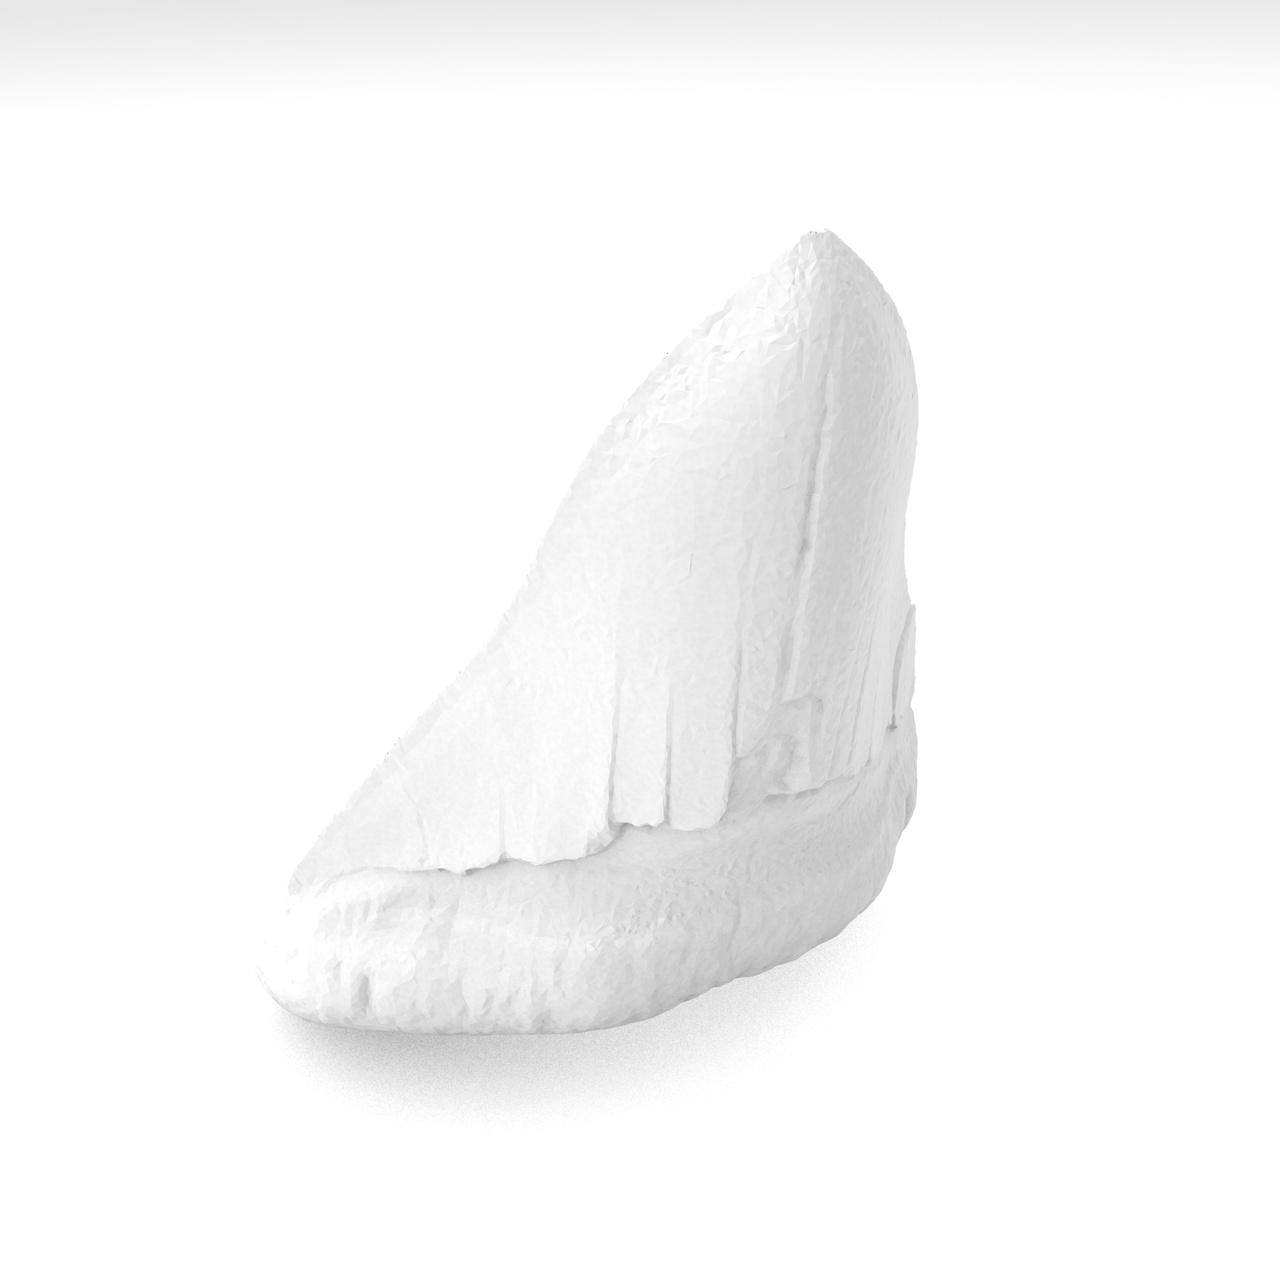 Modelo de impresión 3d de diente de tiburón megalodon